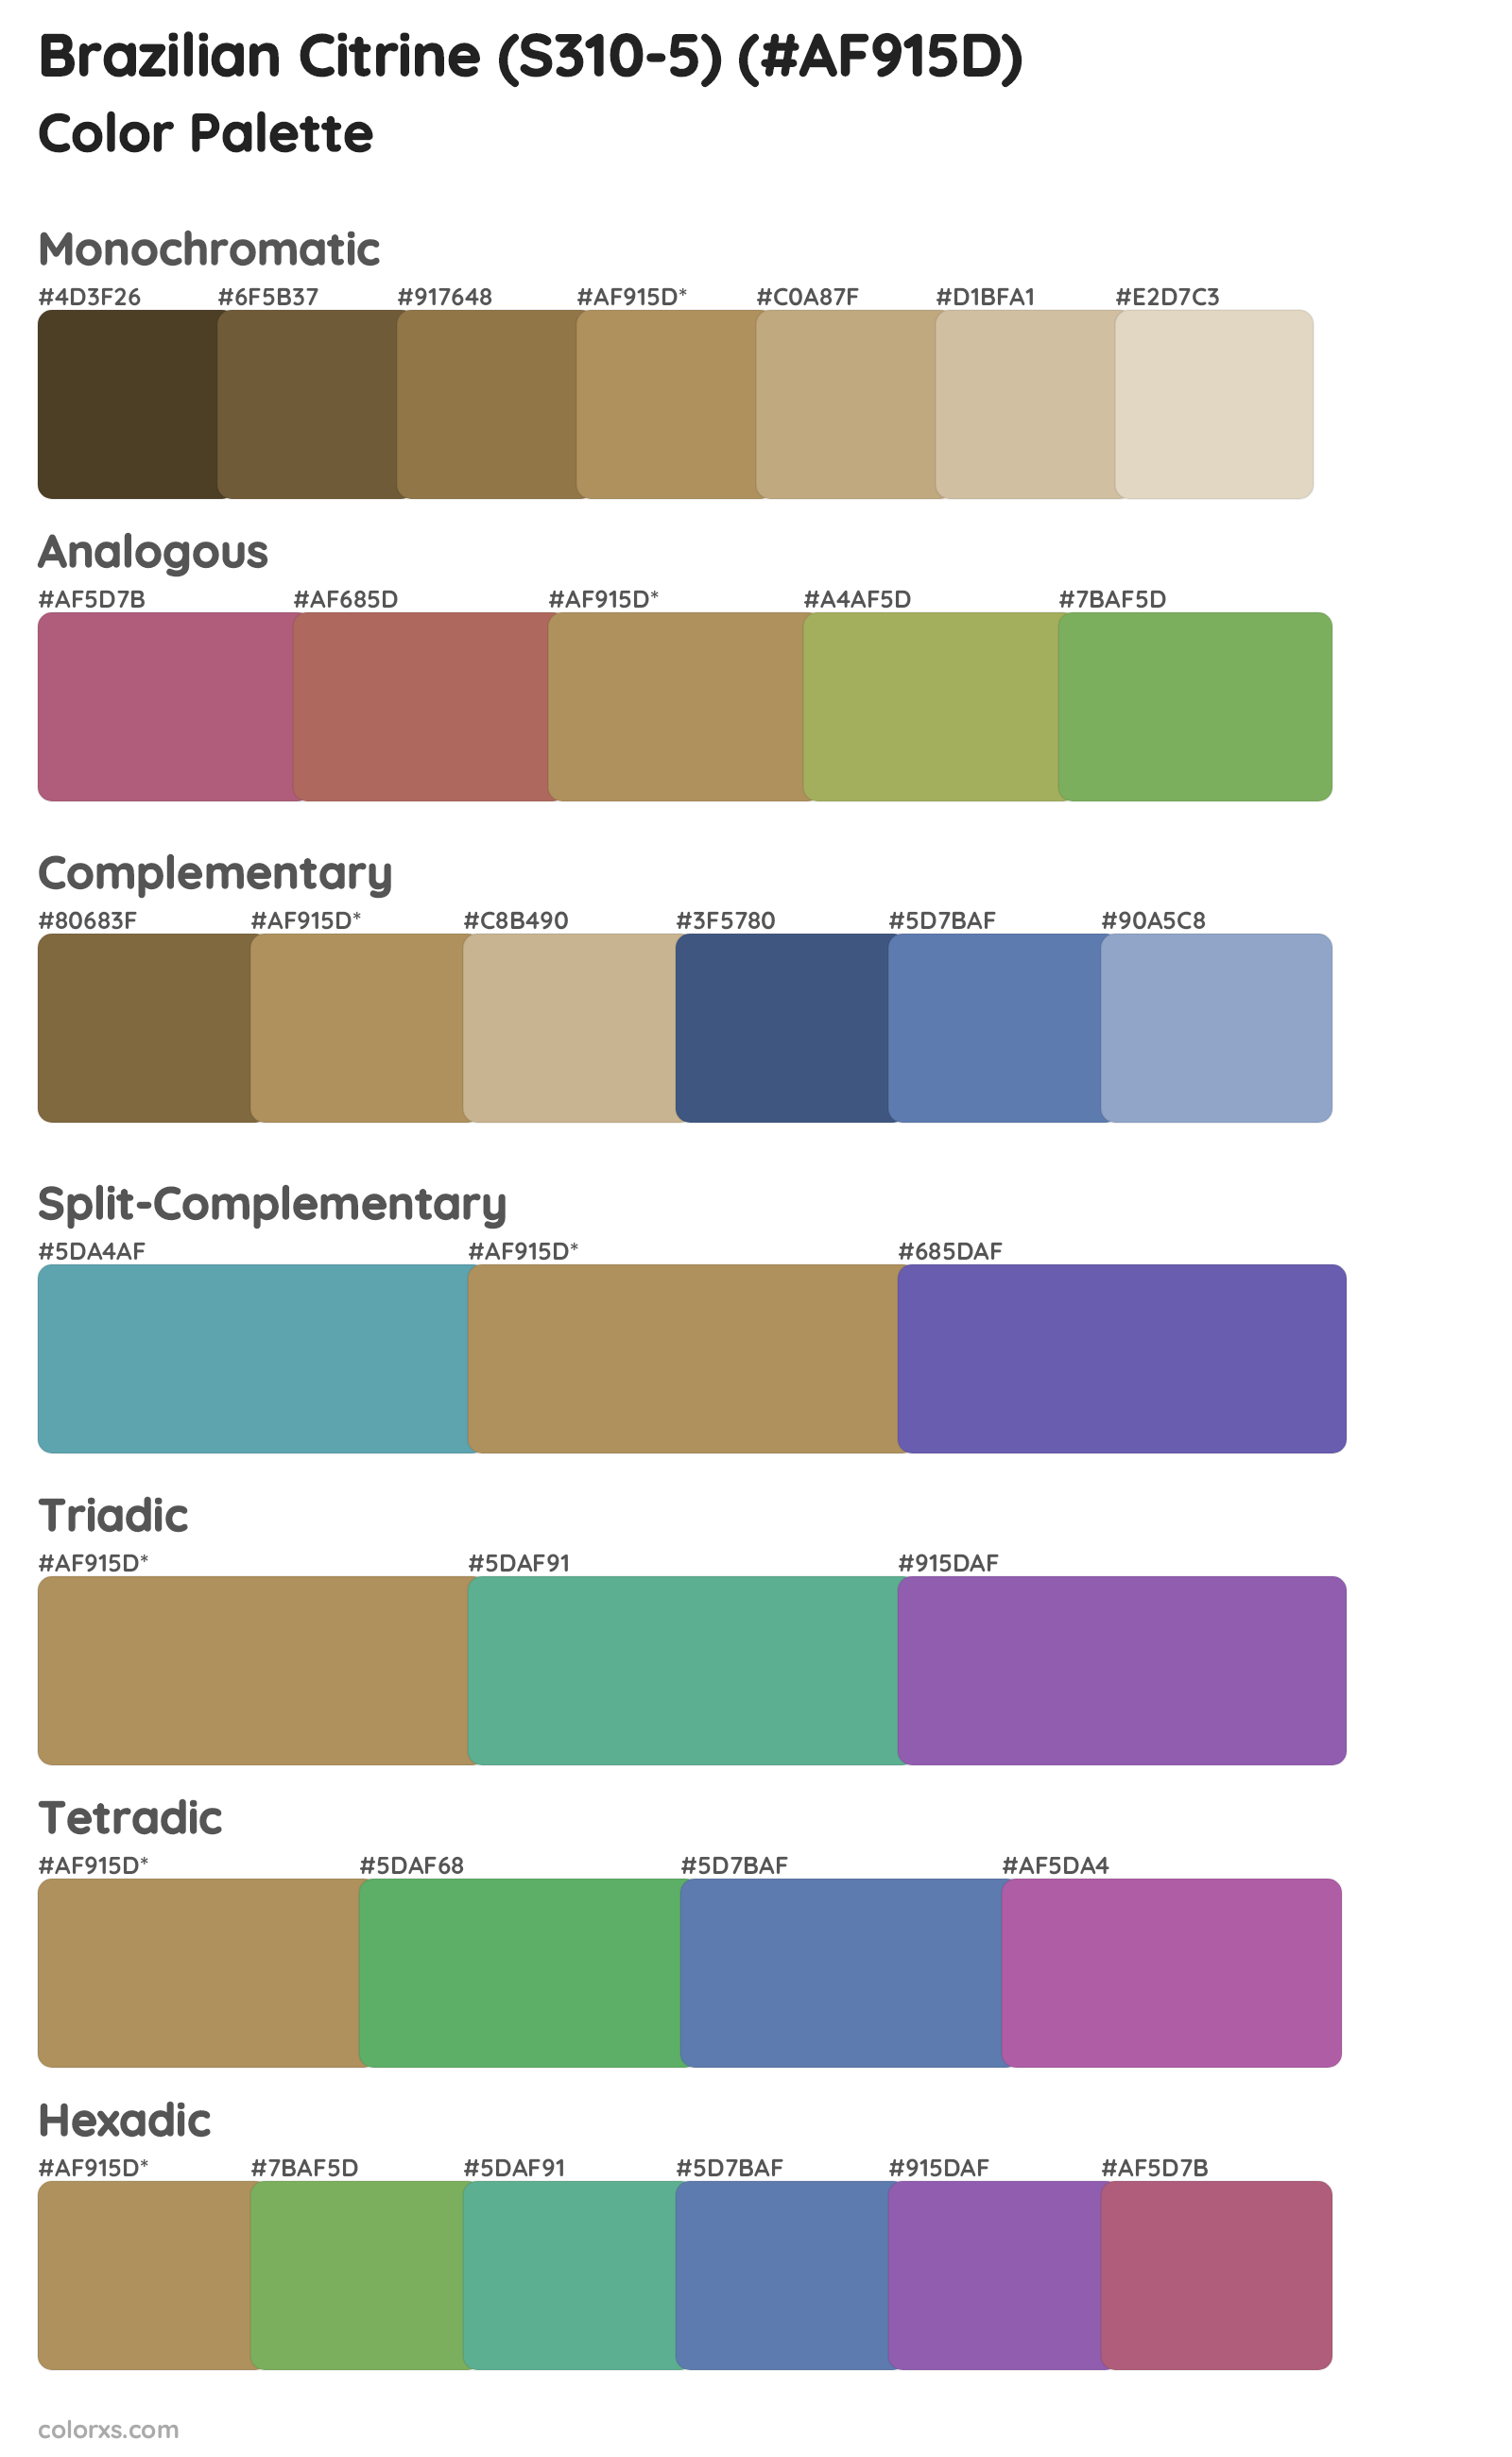 Brazilian Citrine (S310-5) Color Scheme Palettes